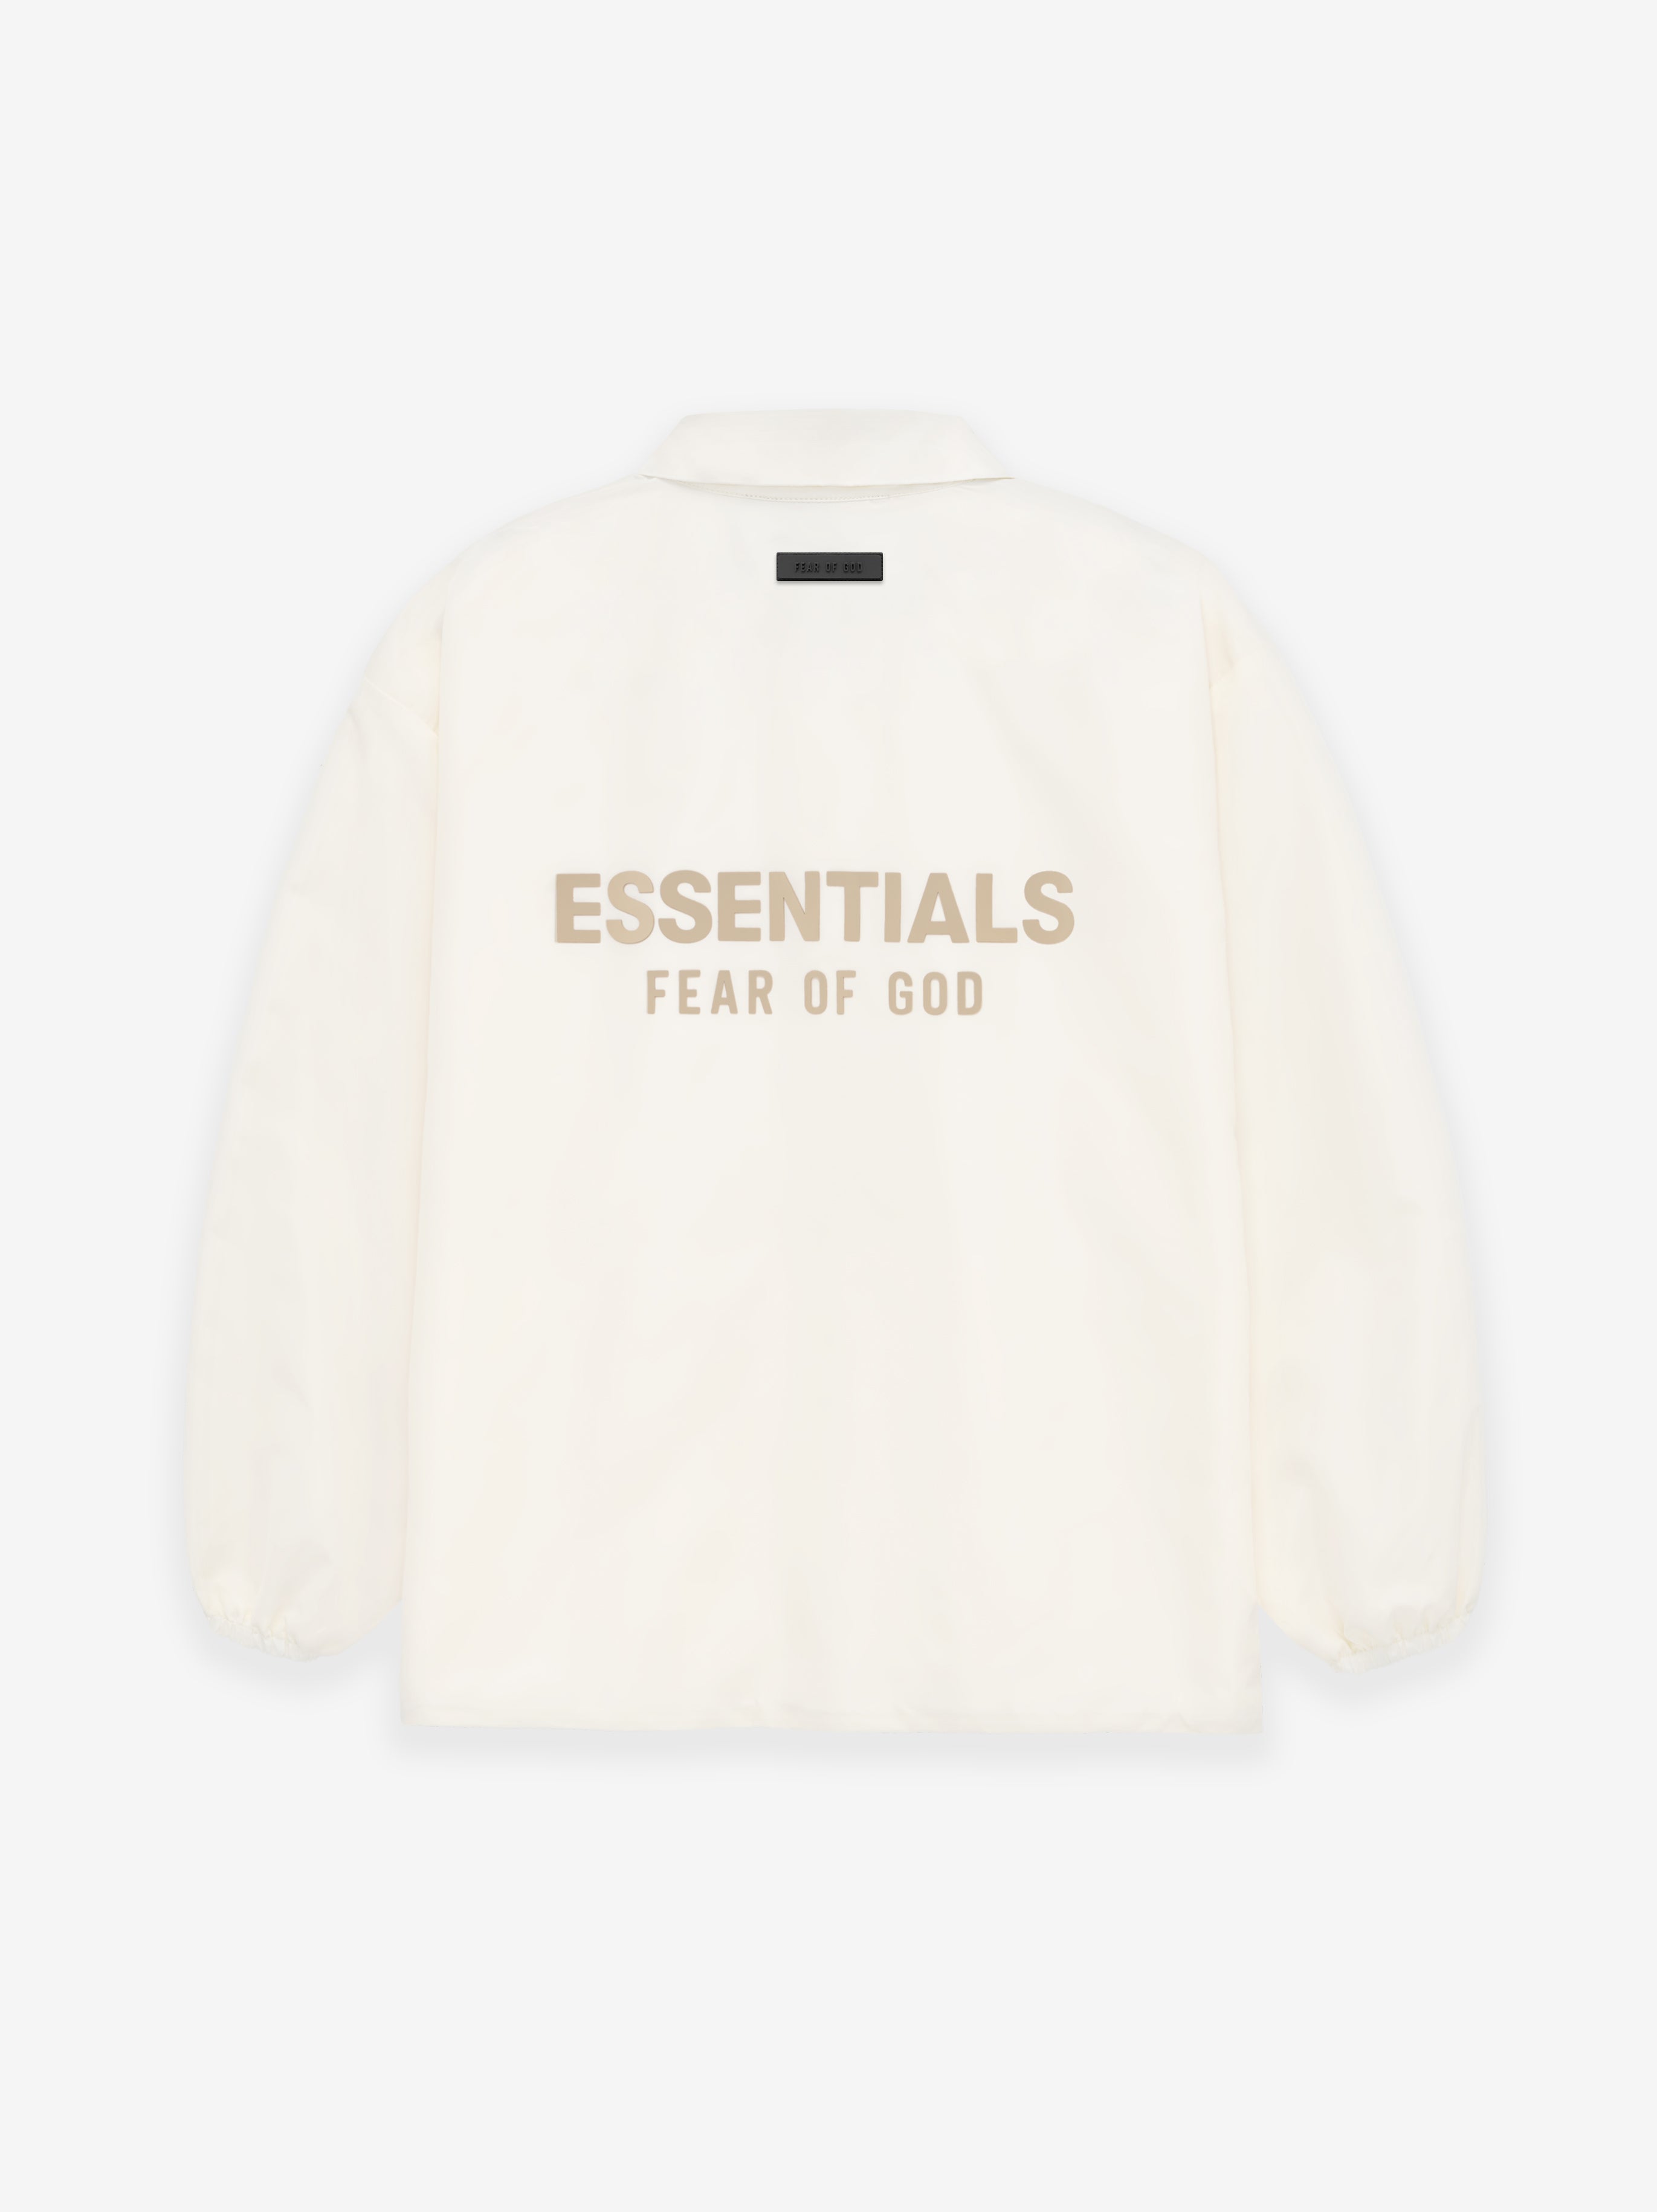 裾に紐ありFOG Essentials Graphic Coach Jacket